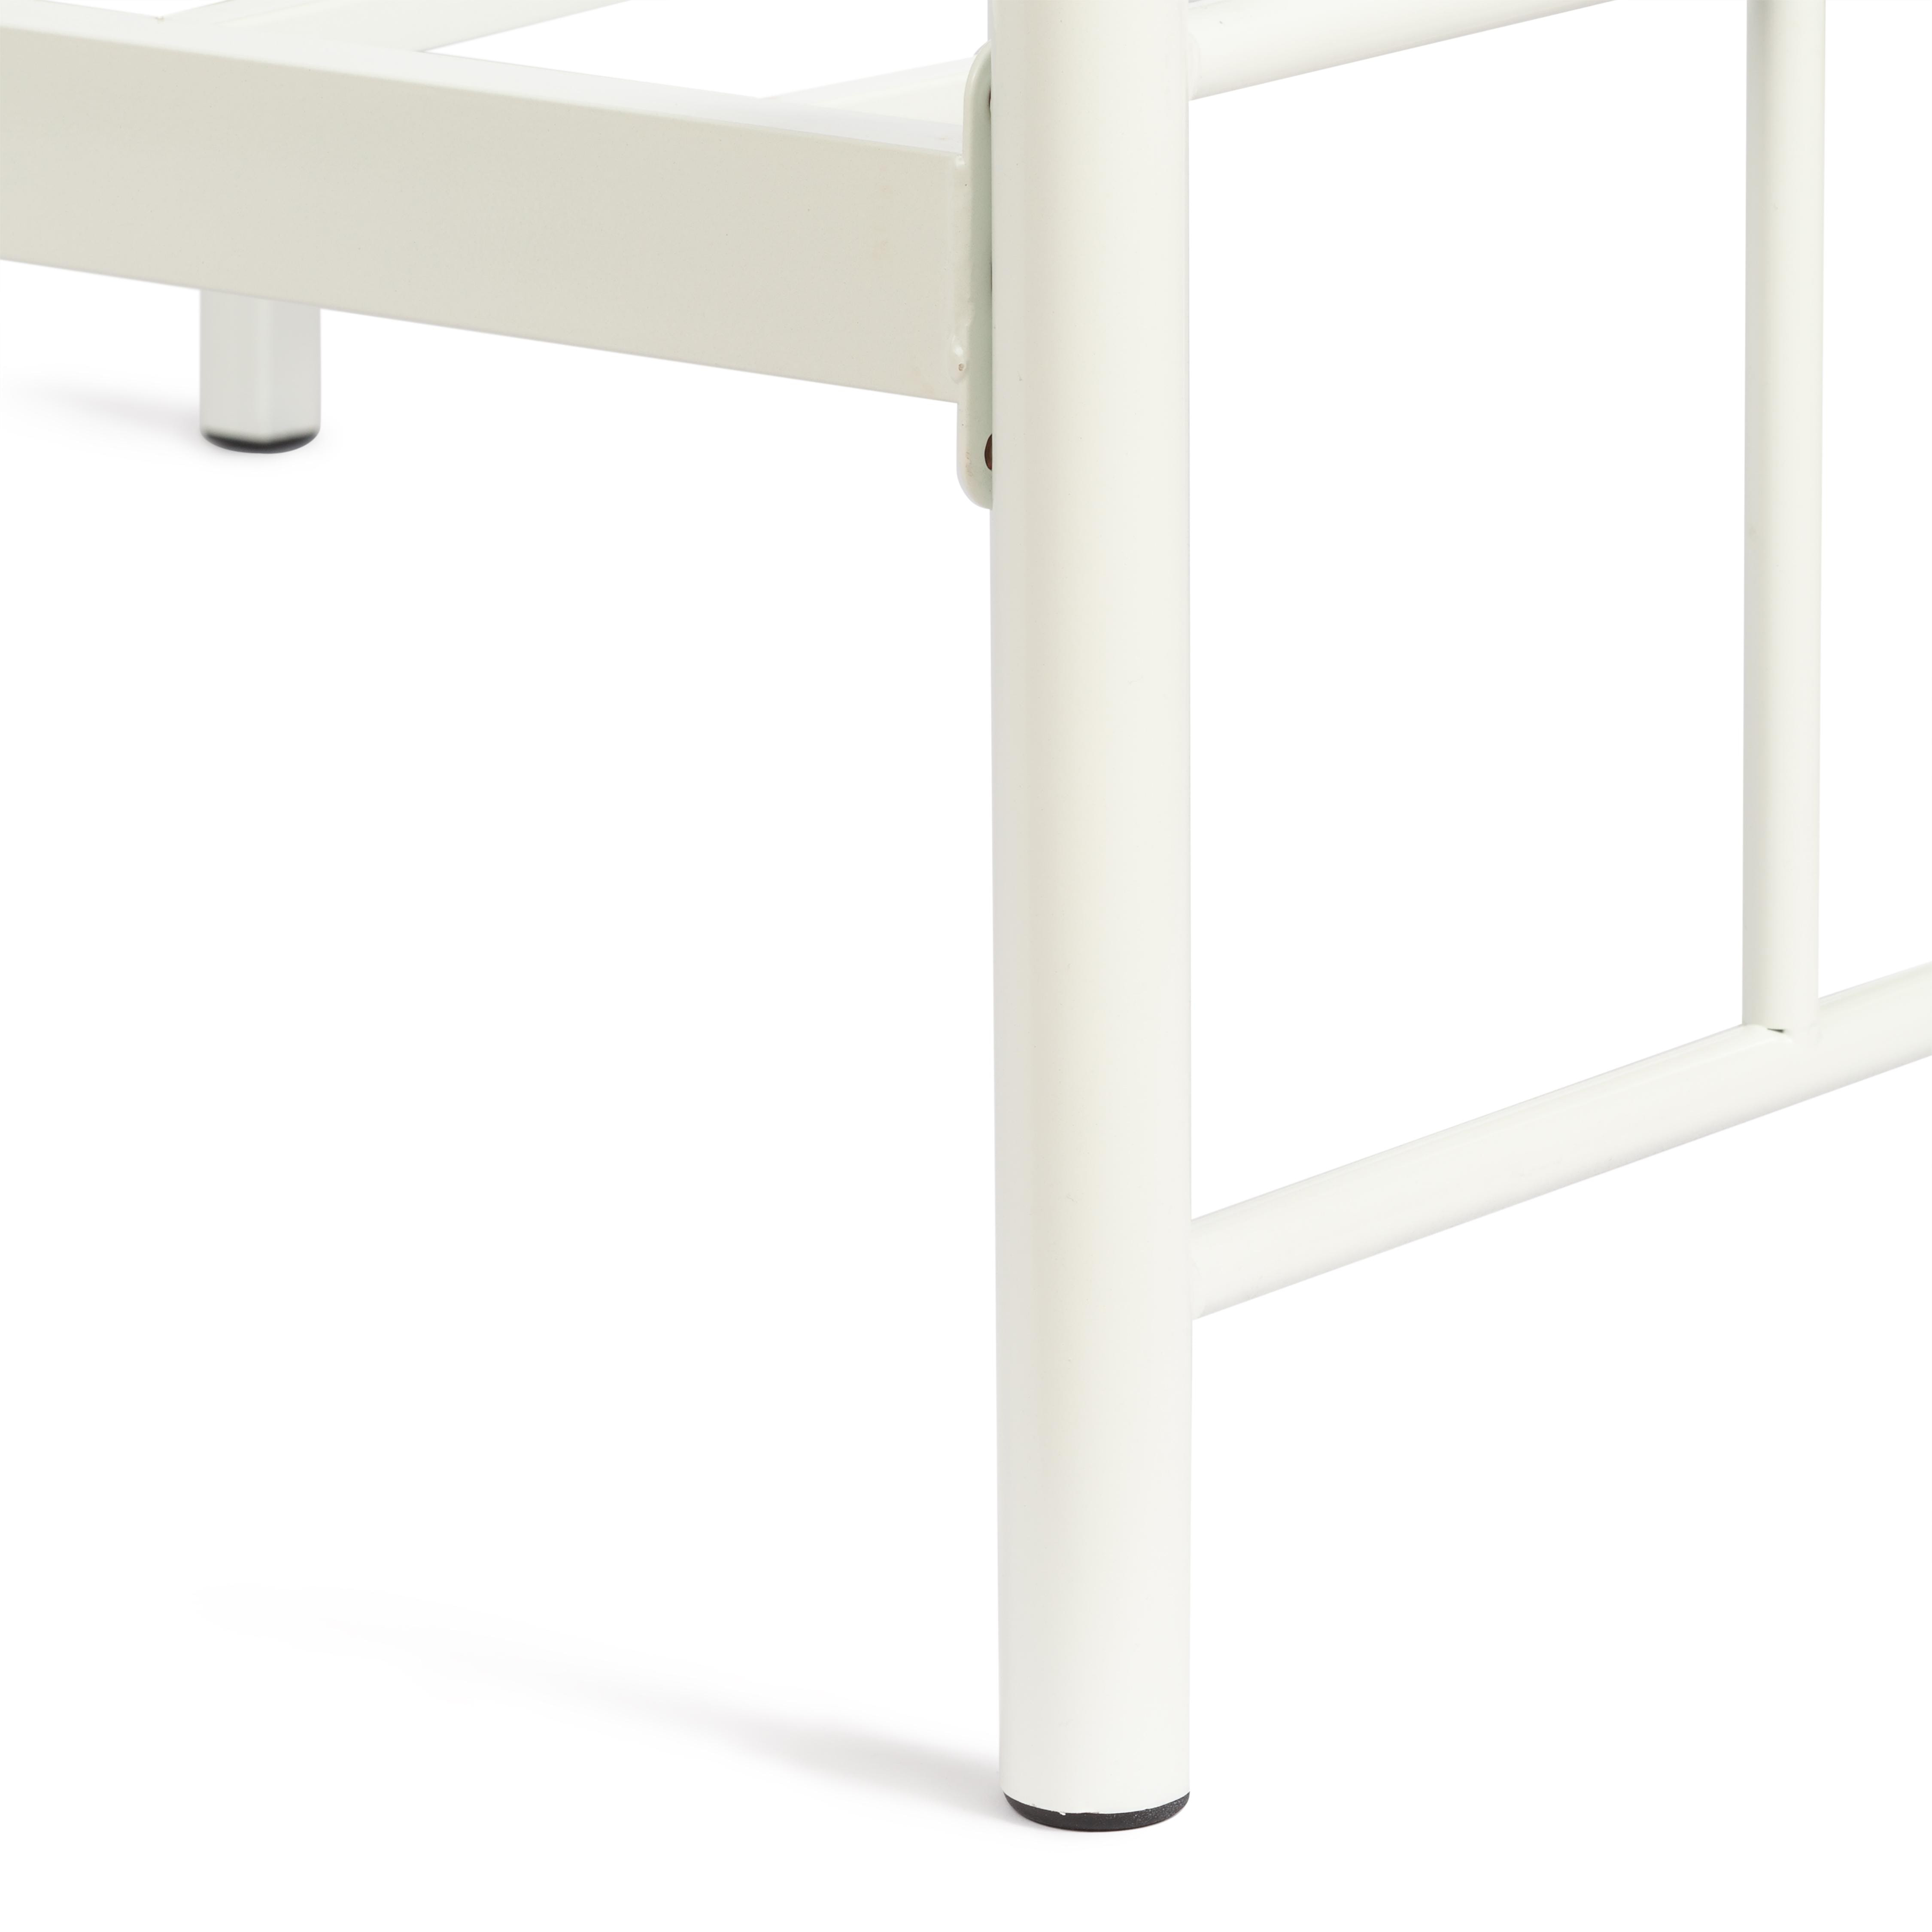 Кровать MALVA (mod. 9303) металл, 90*200 см (Single bed), White (белый)